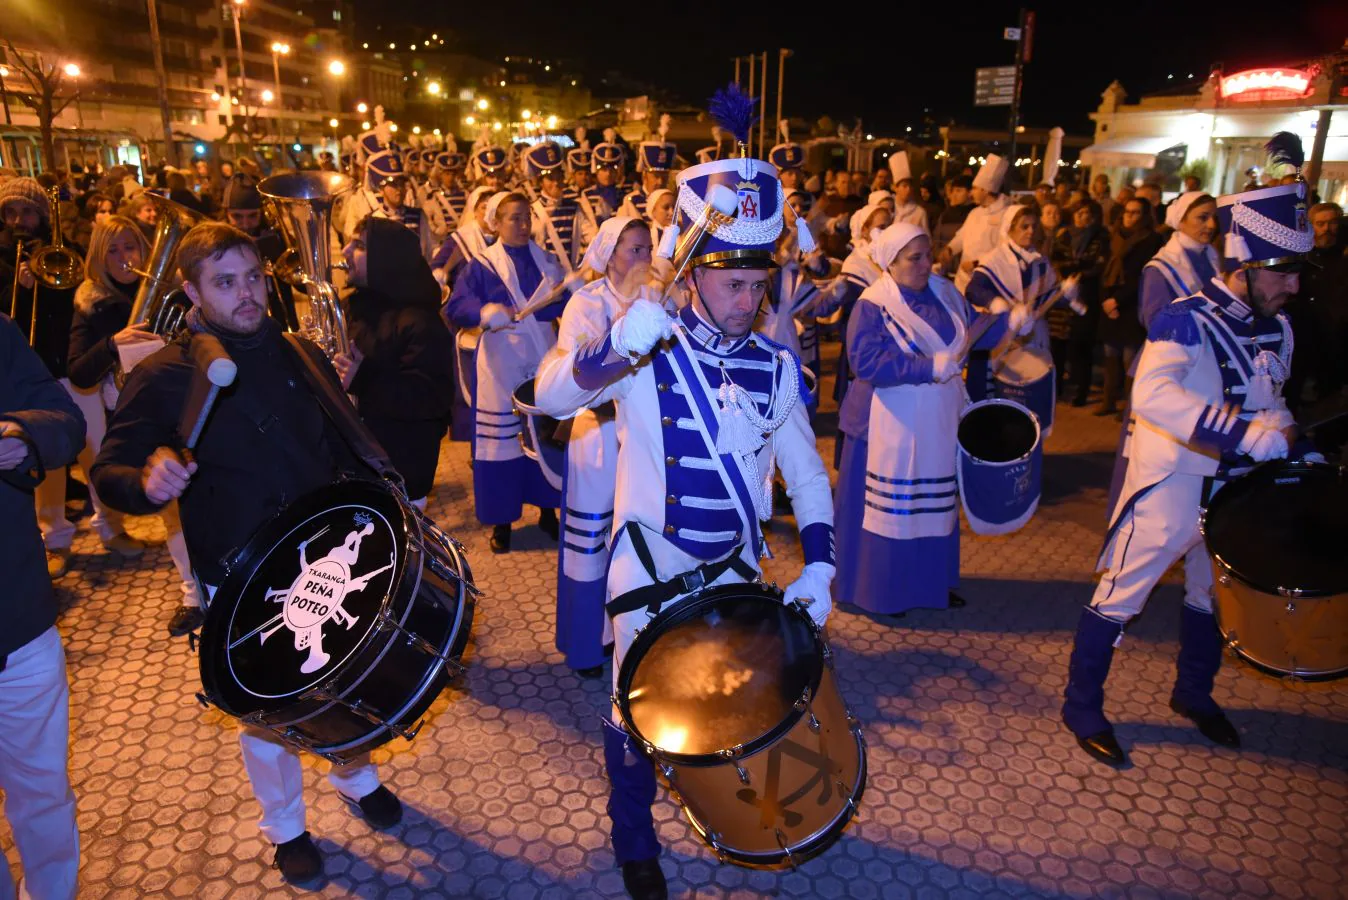 La Tamborrada Atlético San Sebastián ha recorrido por la tarde las calles del Centro